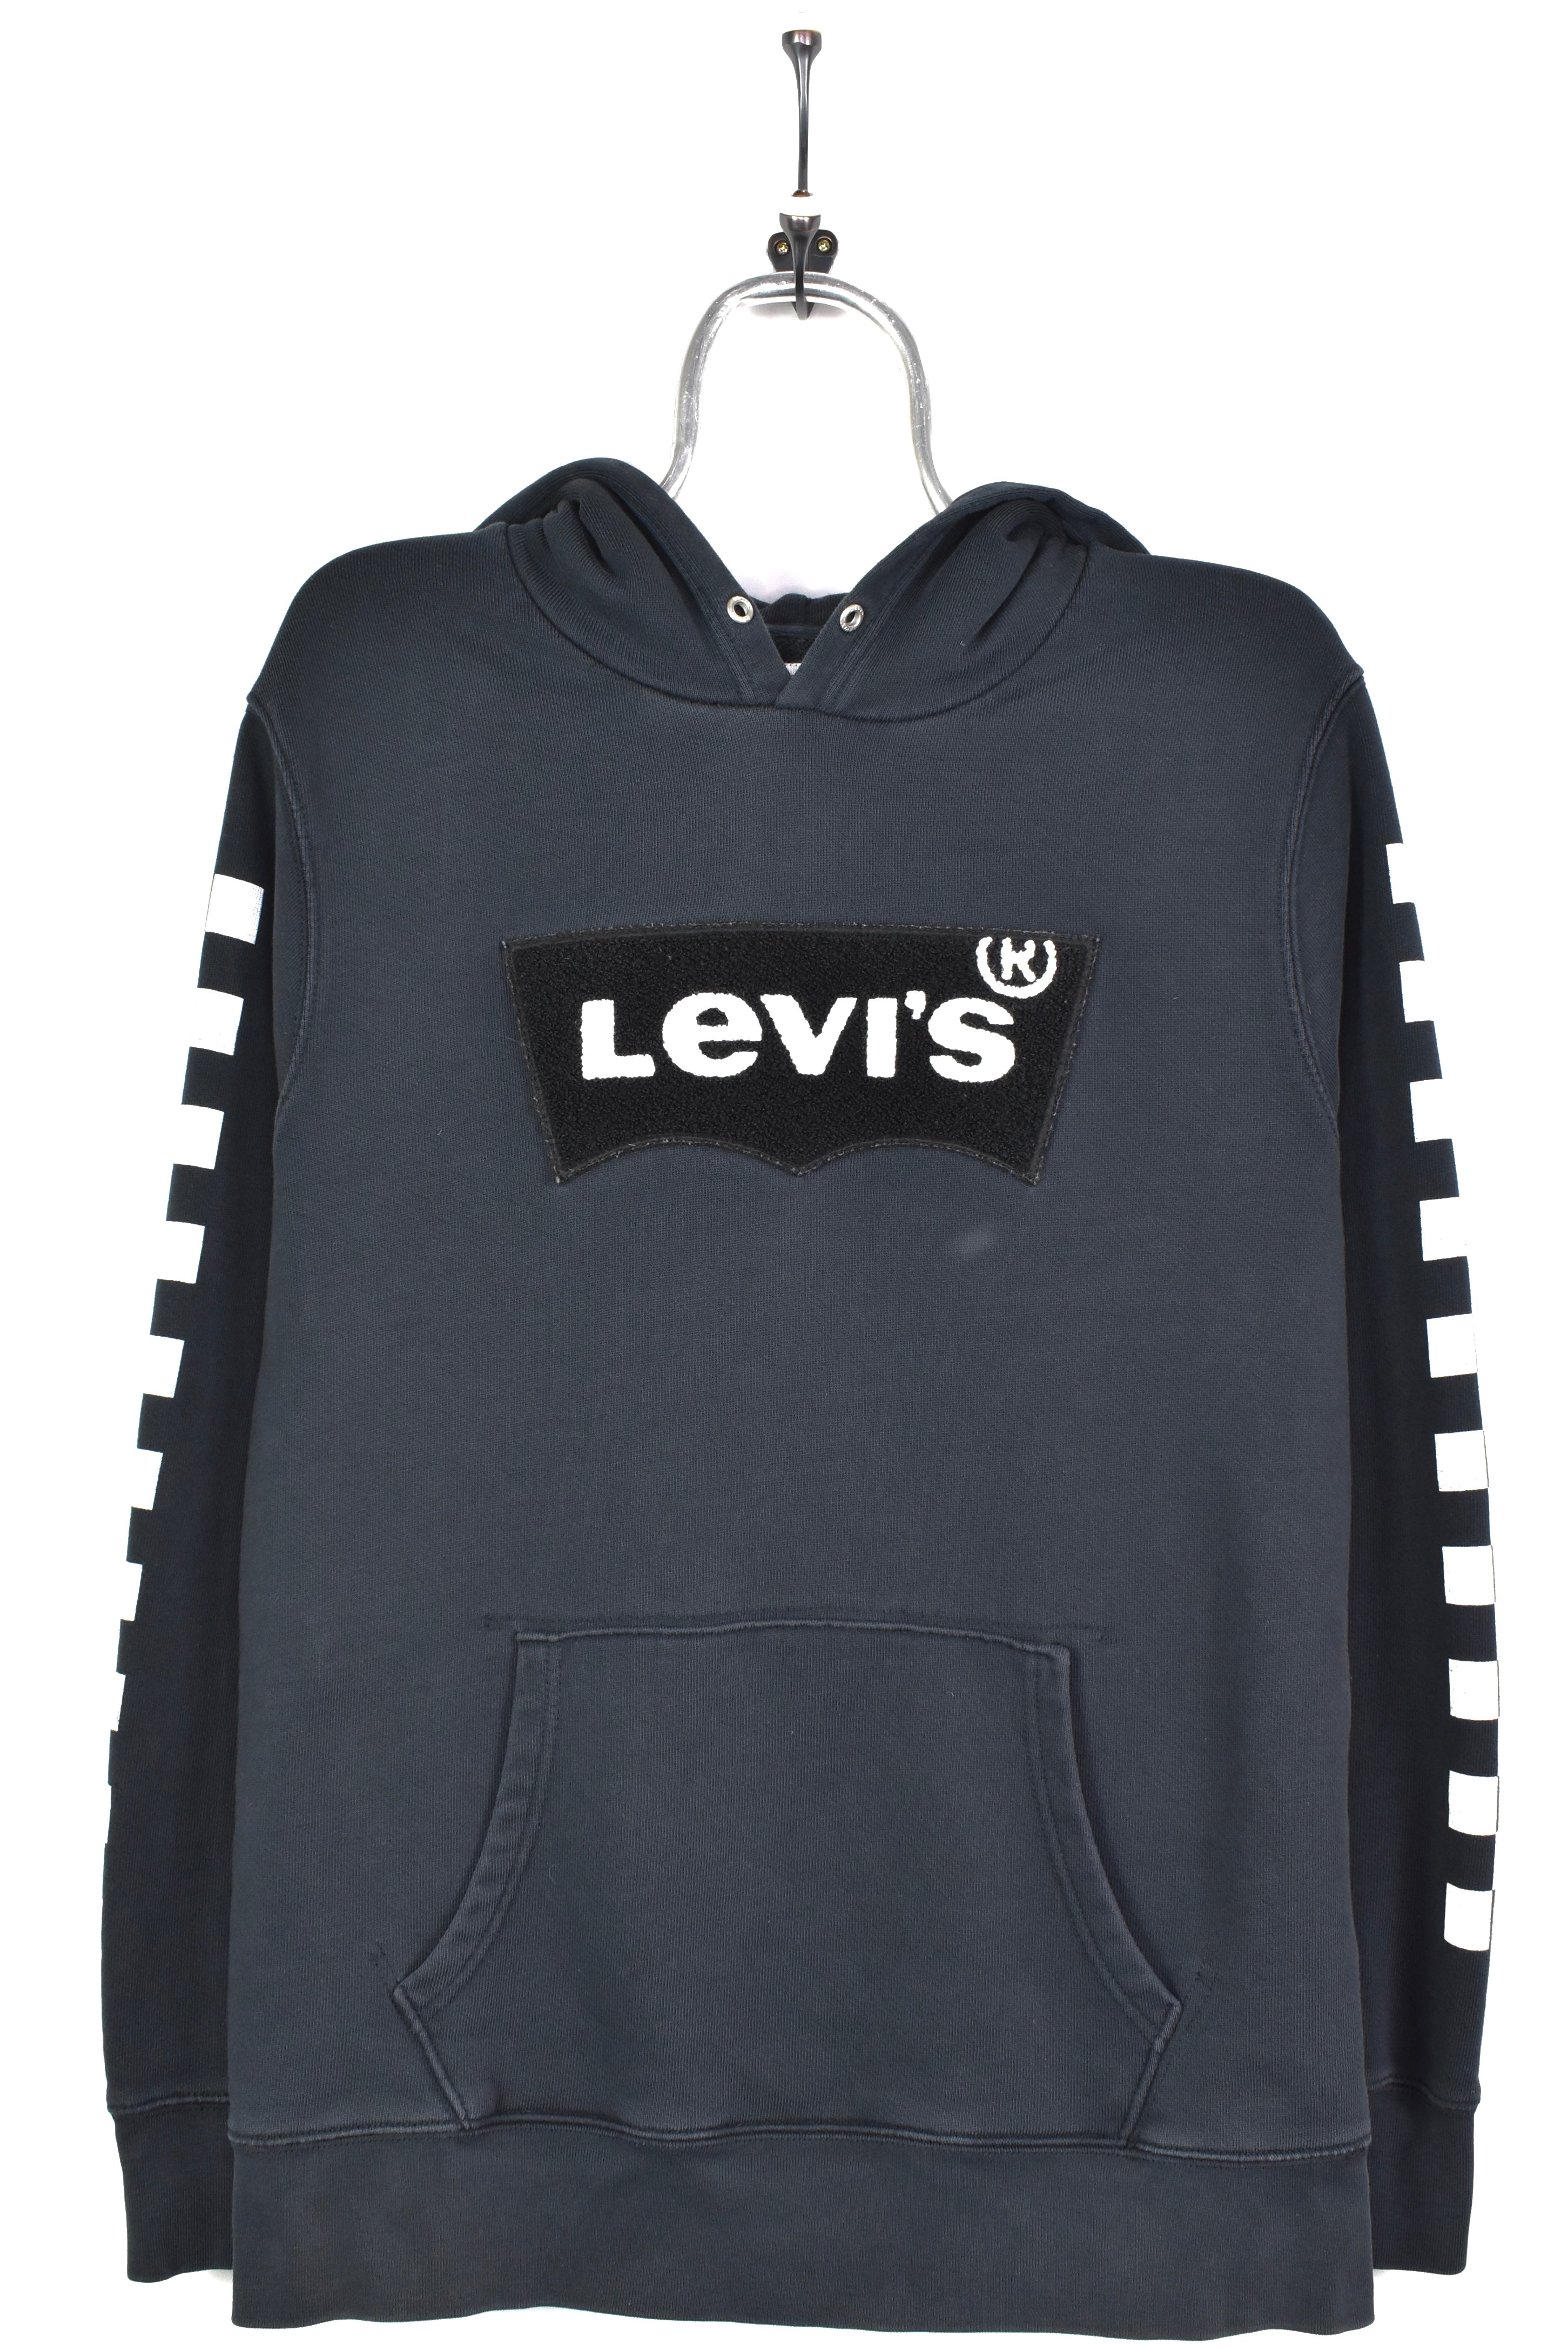 Vintage Levi's hoodie, black embroidered sweatshirt - AU Large LEVIS